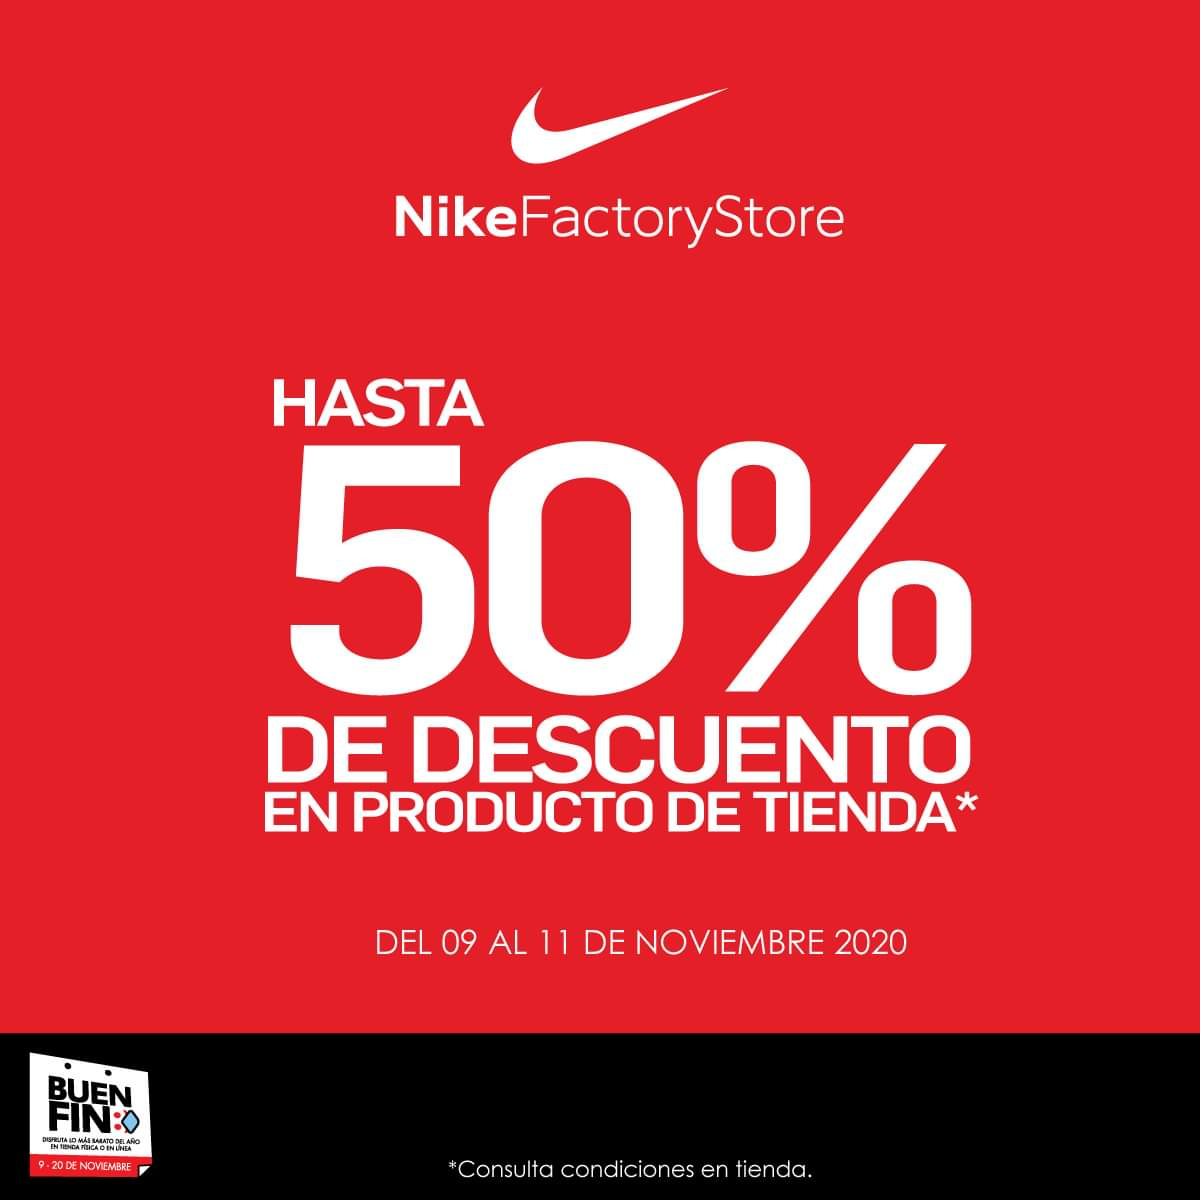 Cereal alumno futuro Nike Factory Valle Dorado, Buy Now, Flash Sales, 60% OFF,  www.busformentera.com